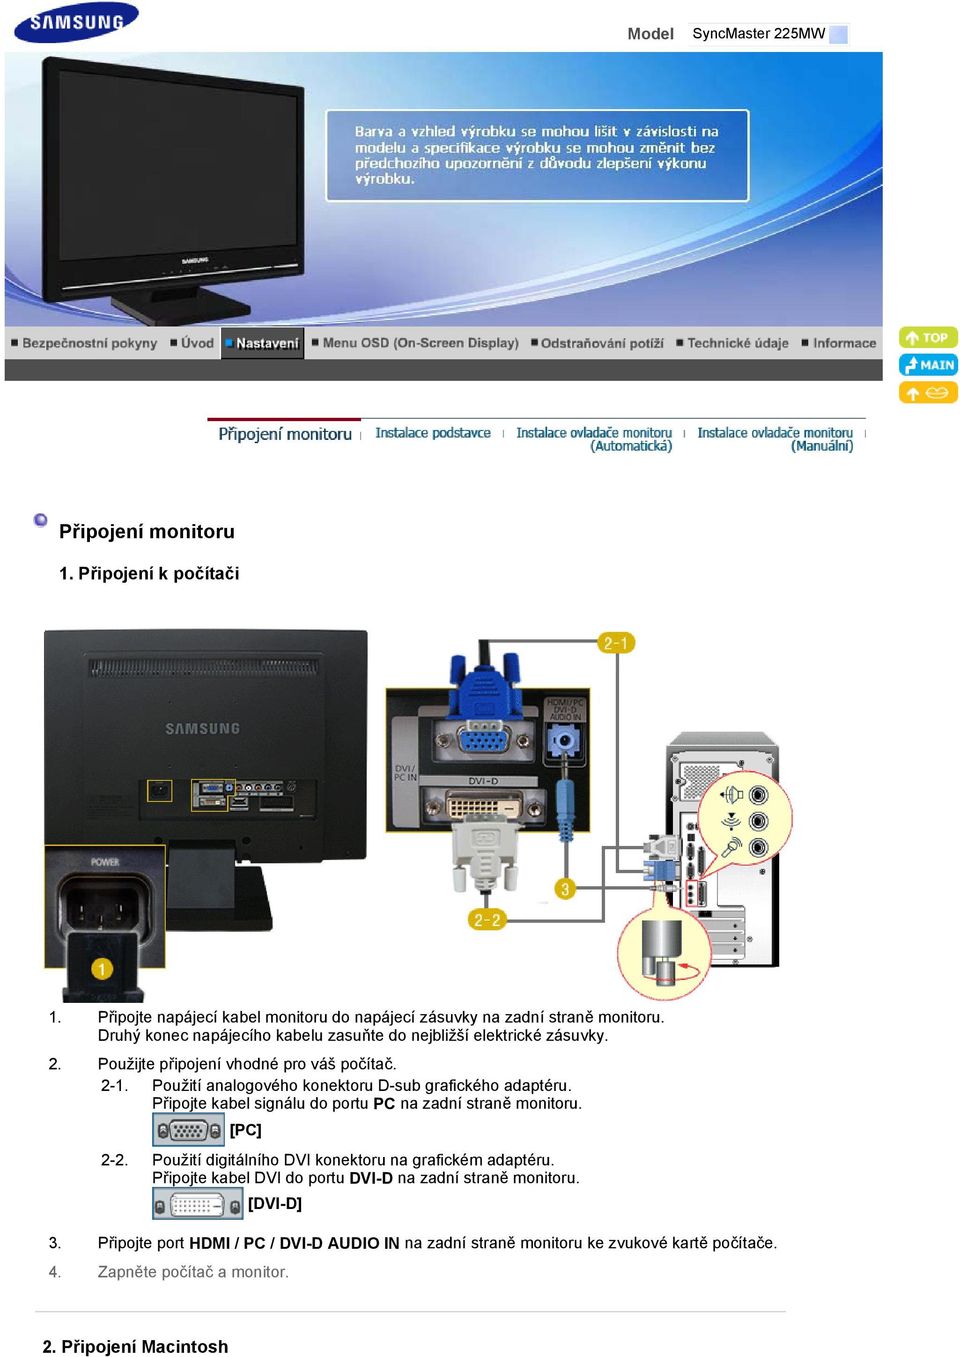 Použití analogového konektoru D-sub grafického adaptéru. Připojte kabel signálu do portu PC na zadní straně monitoru. [PC] 2-2.